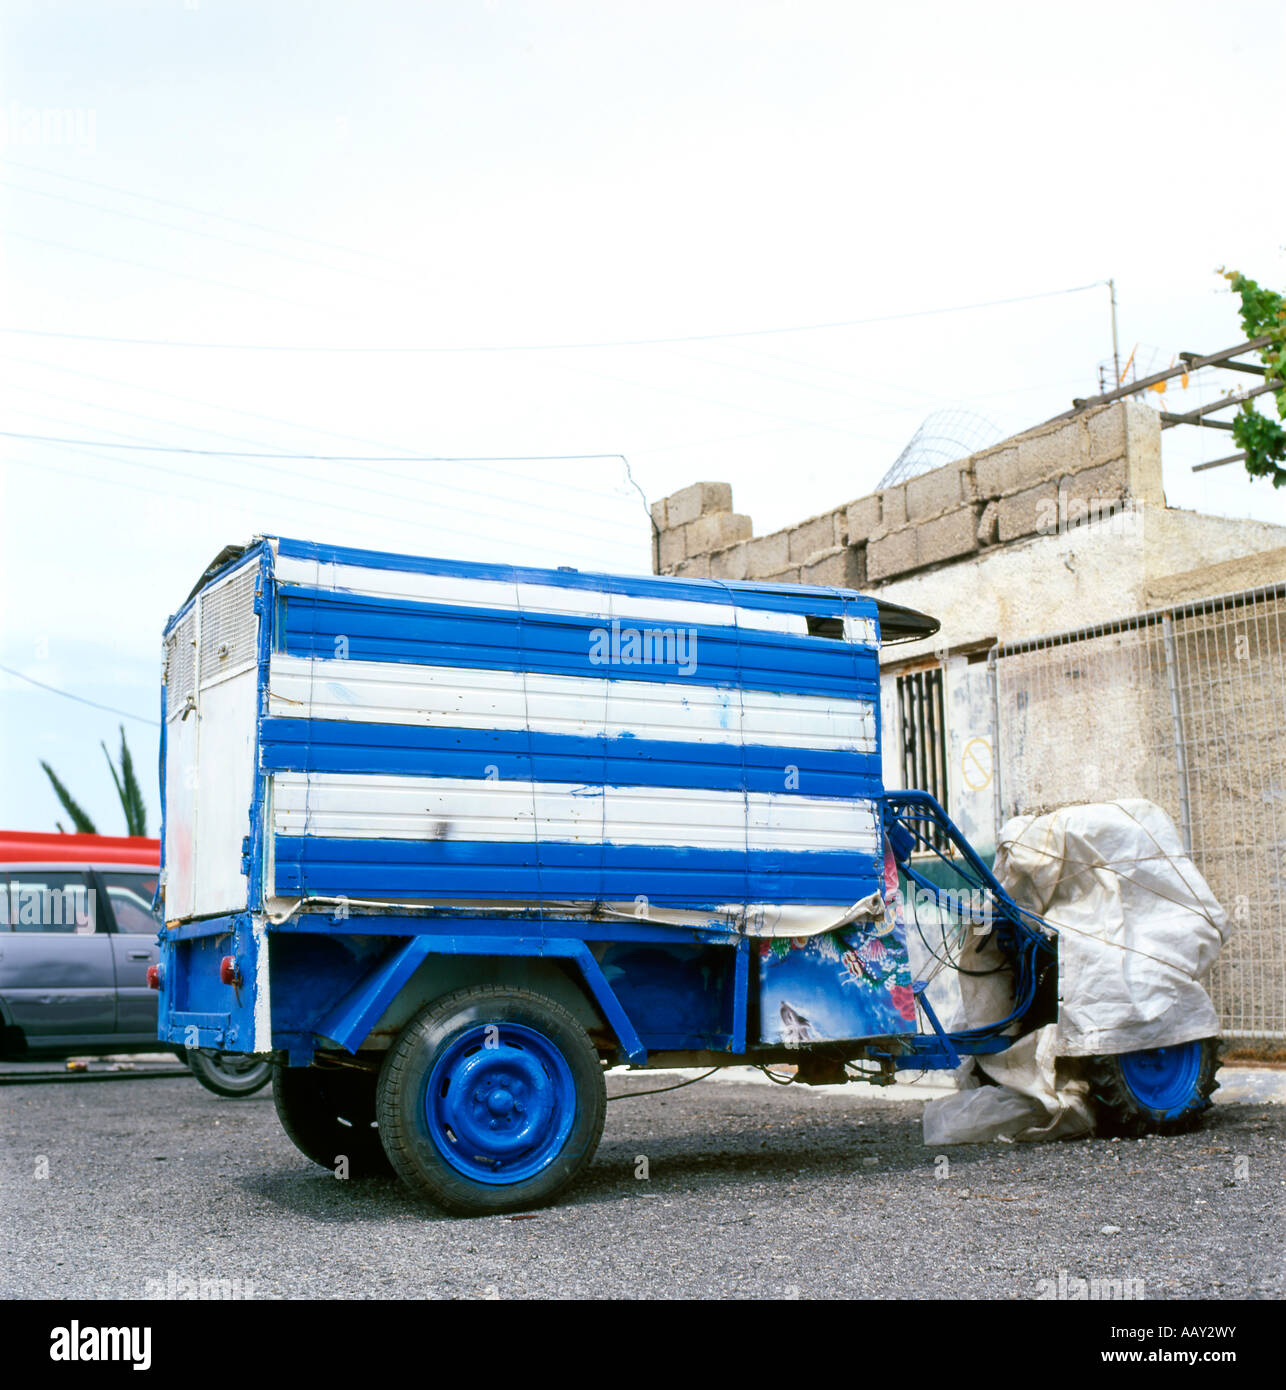 Remorque rayé bleu et blanc à l'arrière d'une moto, Karteradhos, Santorini, Grèce KATHY DEWITT Banque D'Images